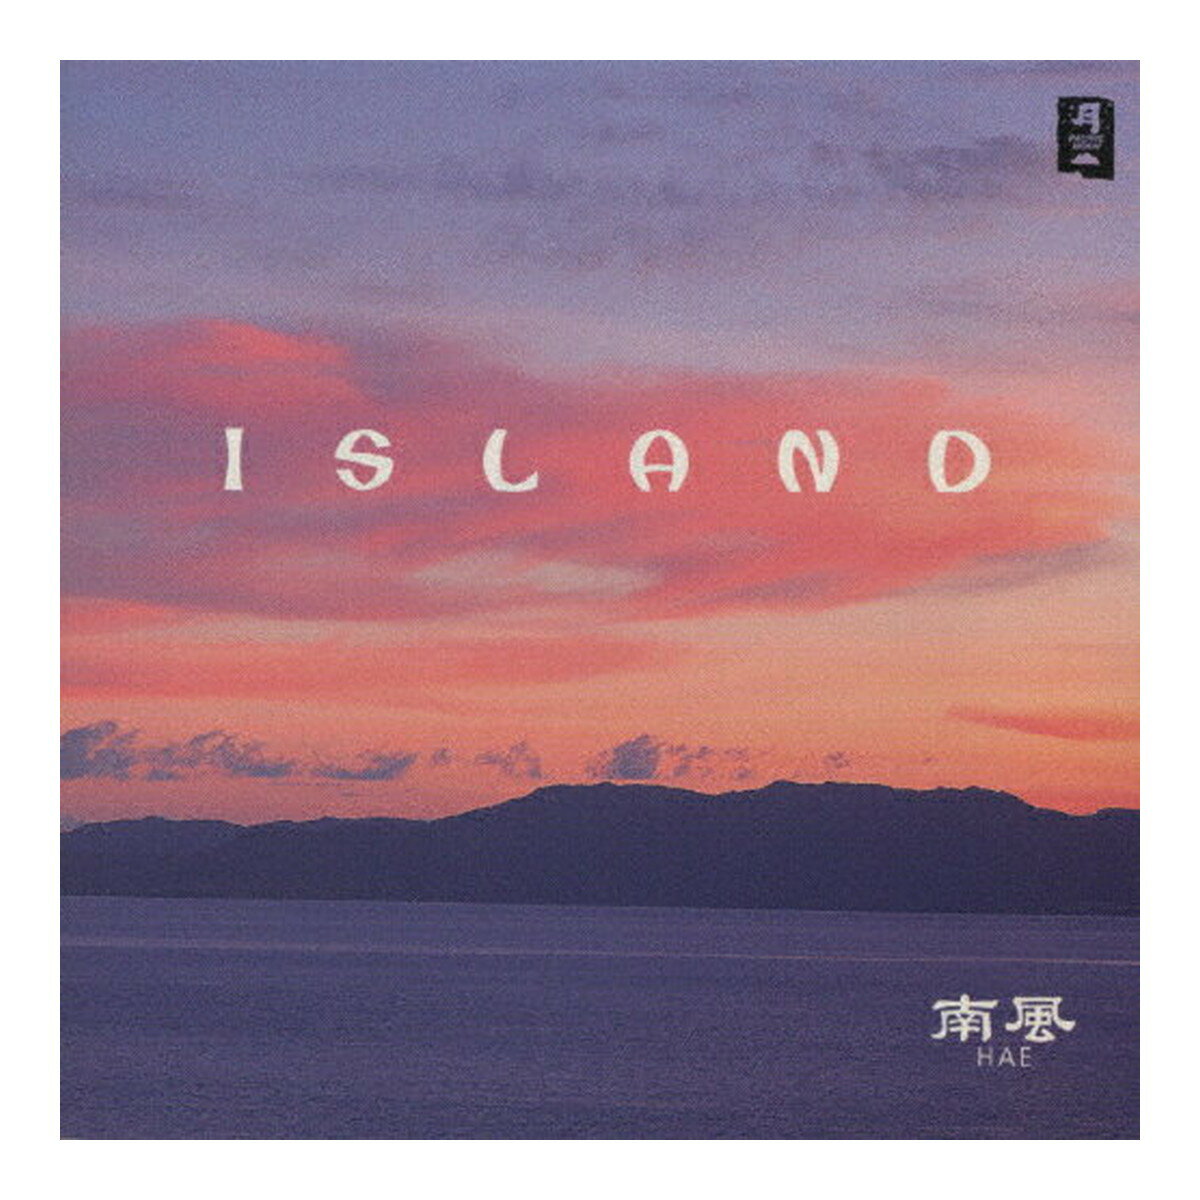 【送料込・まとめ買い×3個セット】日本香堂 PACIFIC MOON ISLAND 南風 CHCB-10016 CD